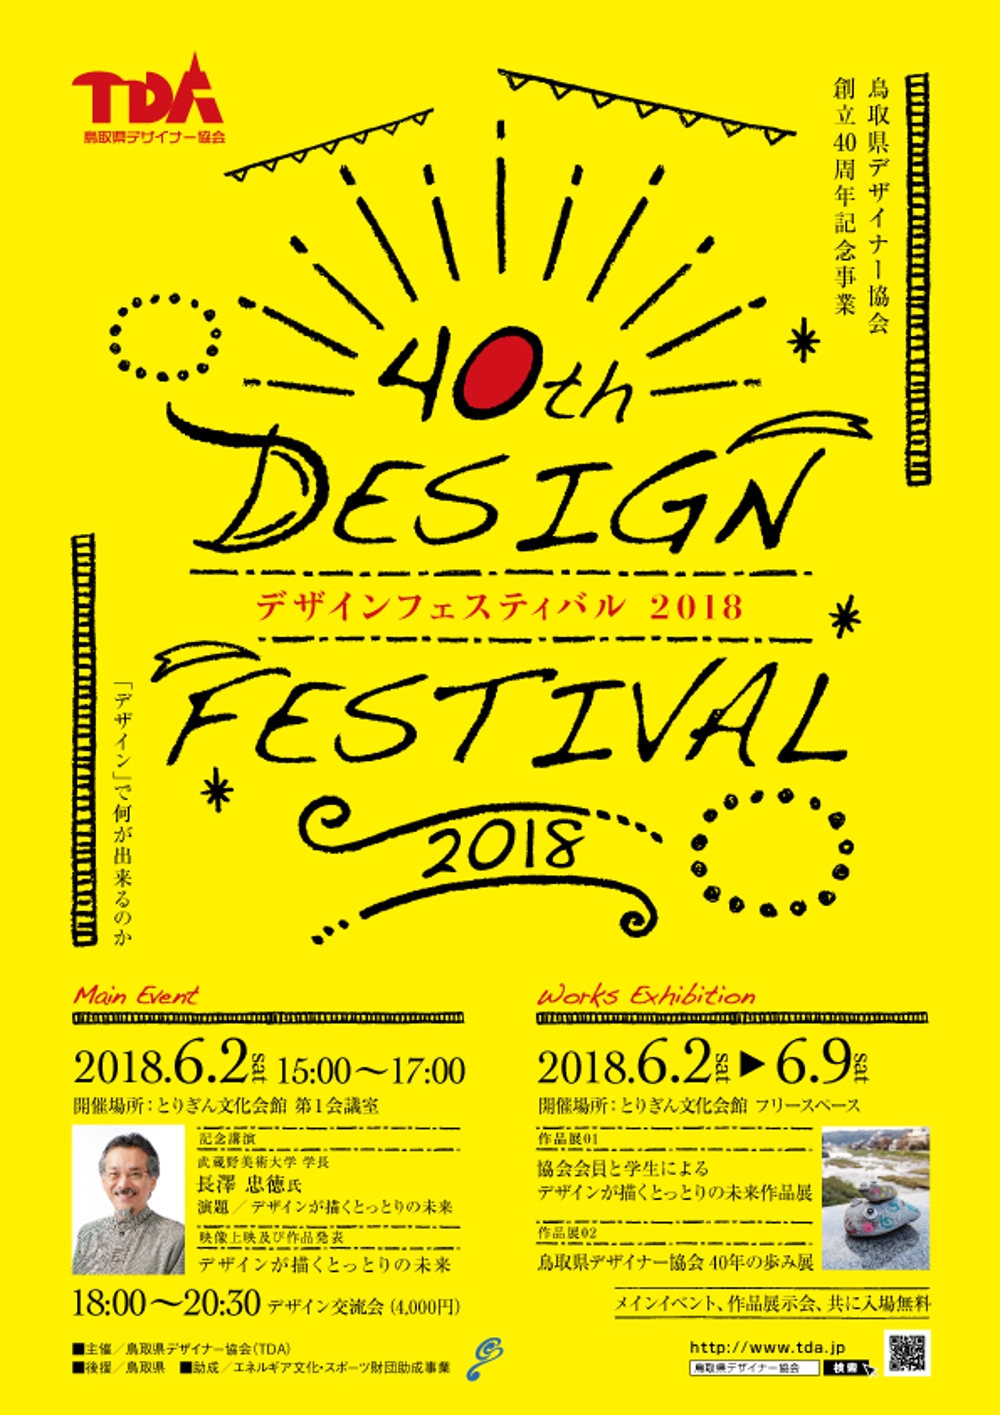 鳥取県デザイナー協会様 40周年記念イベントチラシ制作 ポートフォリオ詳細 Hiroro4422 デザイナー クラウドソーシング ランサーズ